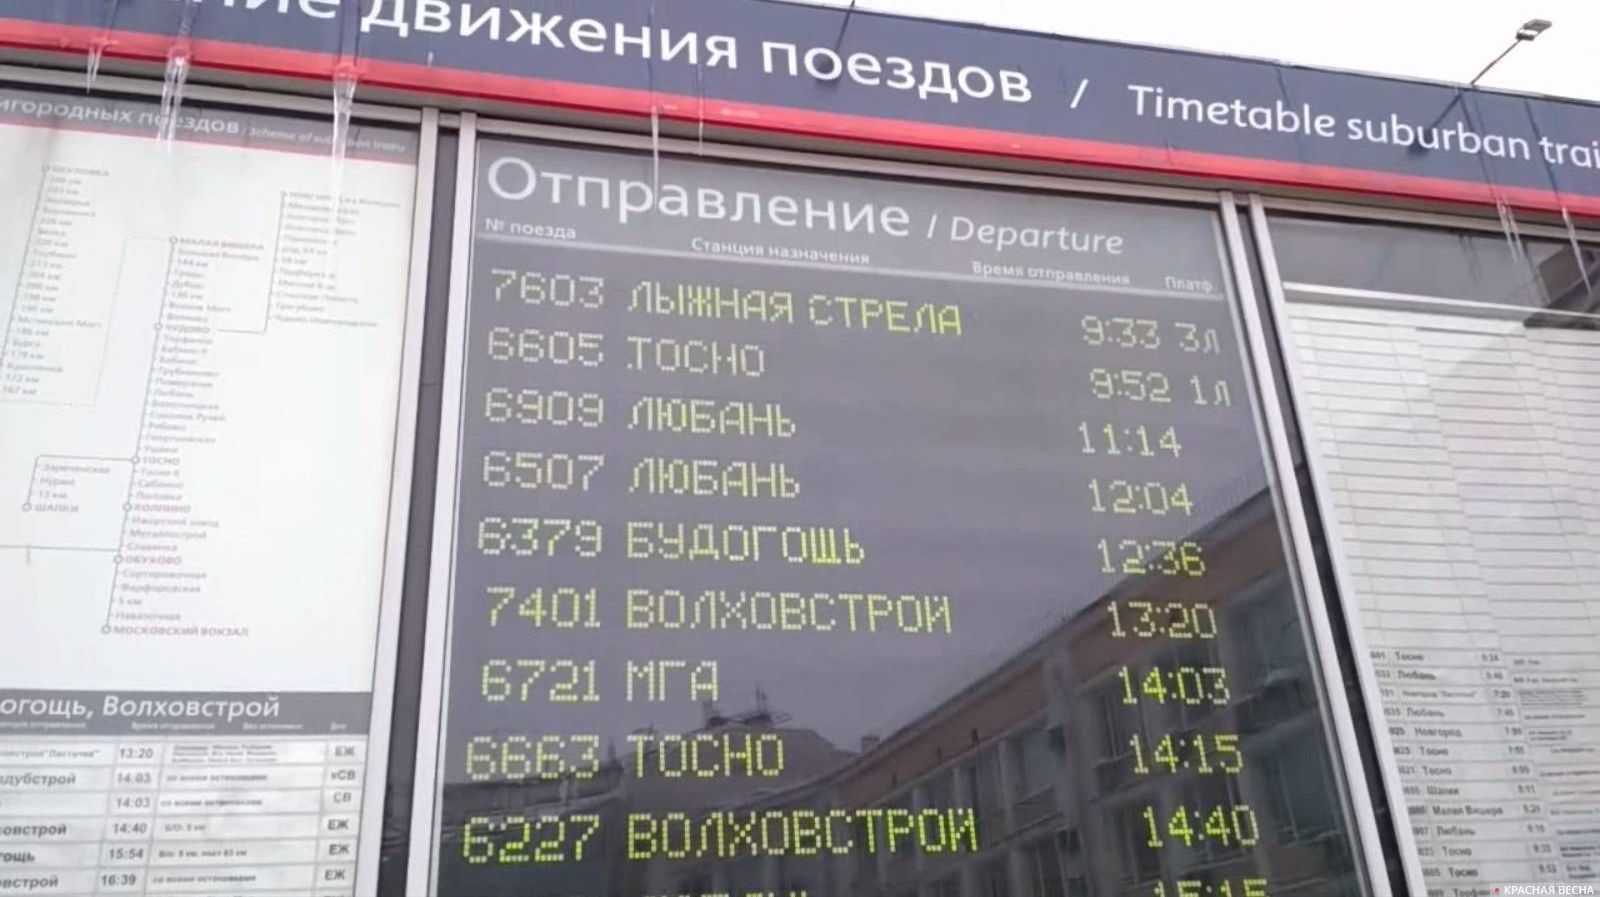 Московский вокзал петербурга главный жд вокзал в центре города - информационно-новостной портал санкт-петербурга